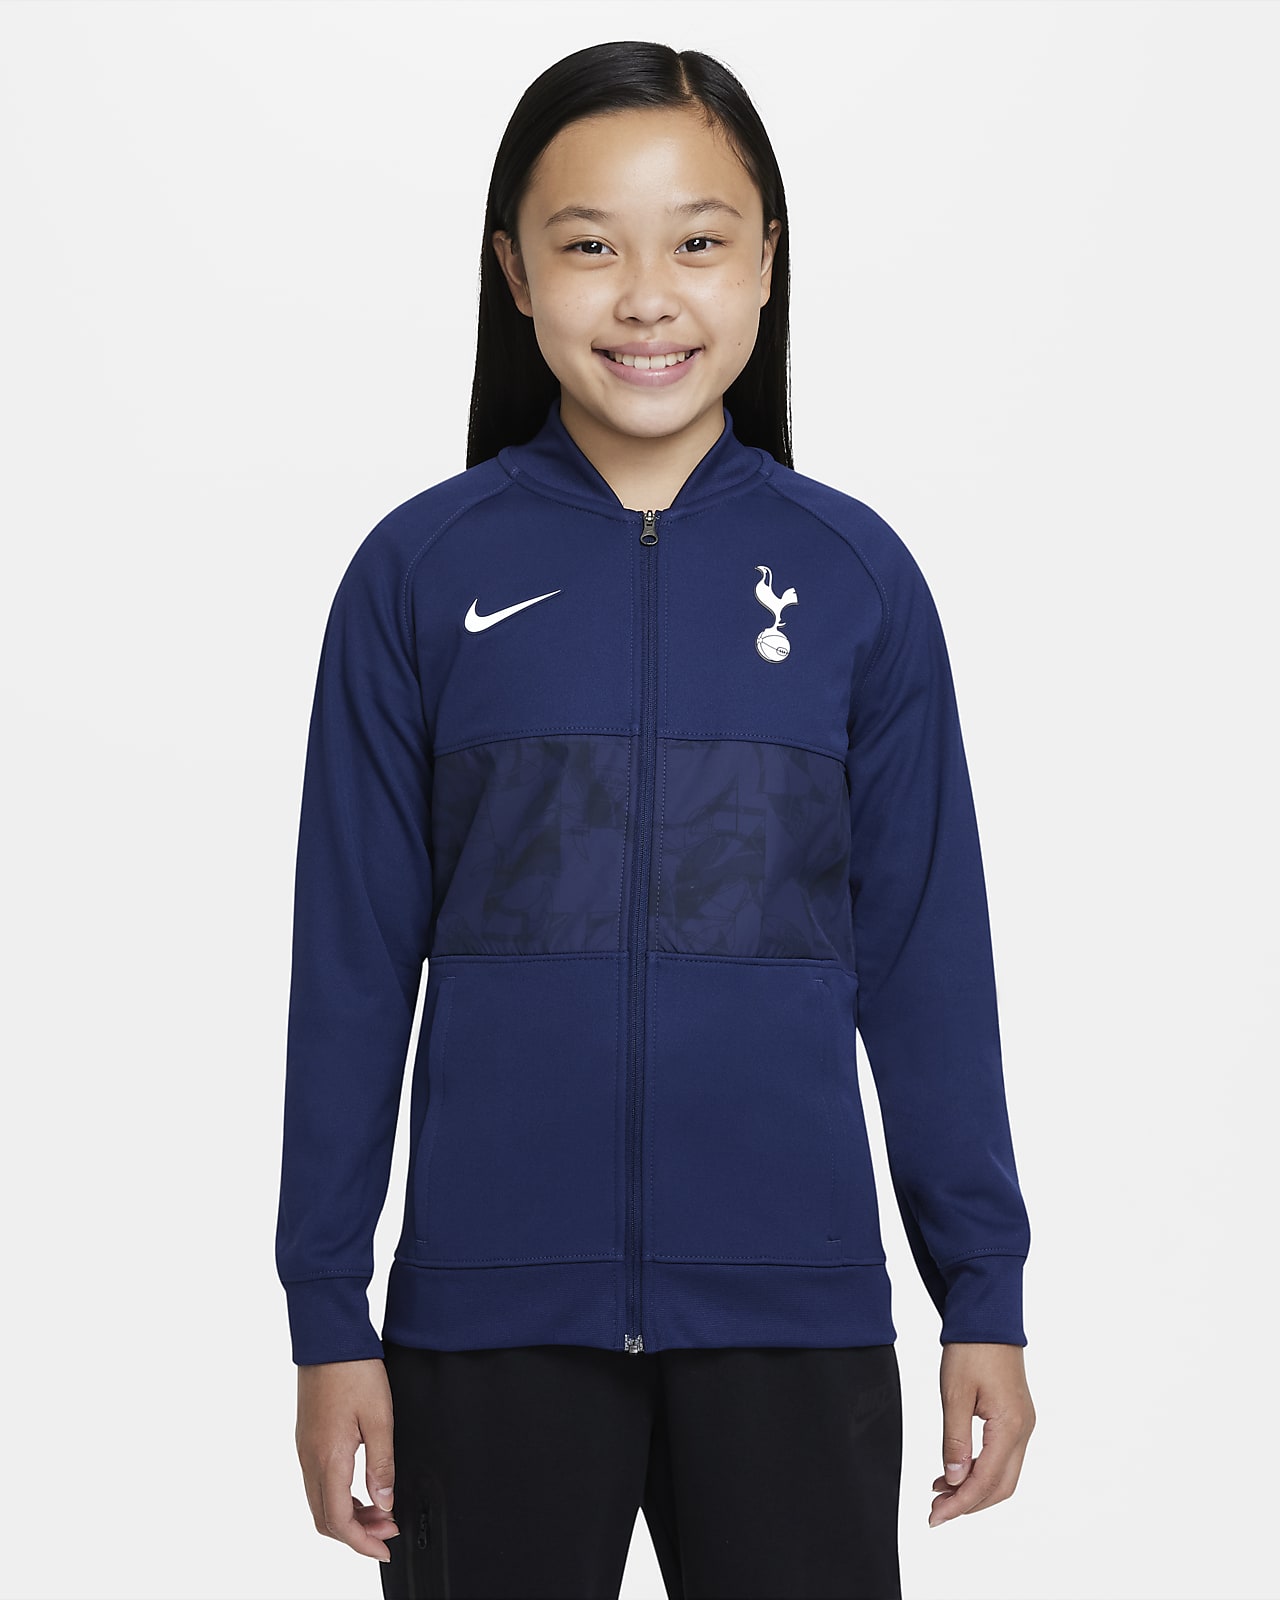 Tottenham Hotspur Jaqueta de futbol amb cremallera completa - Nen/a